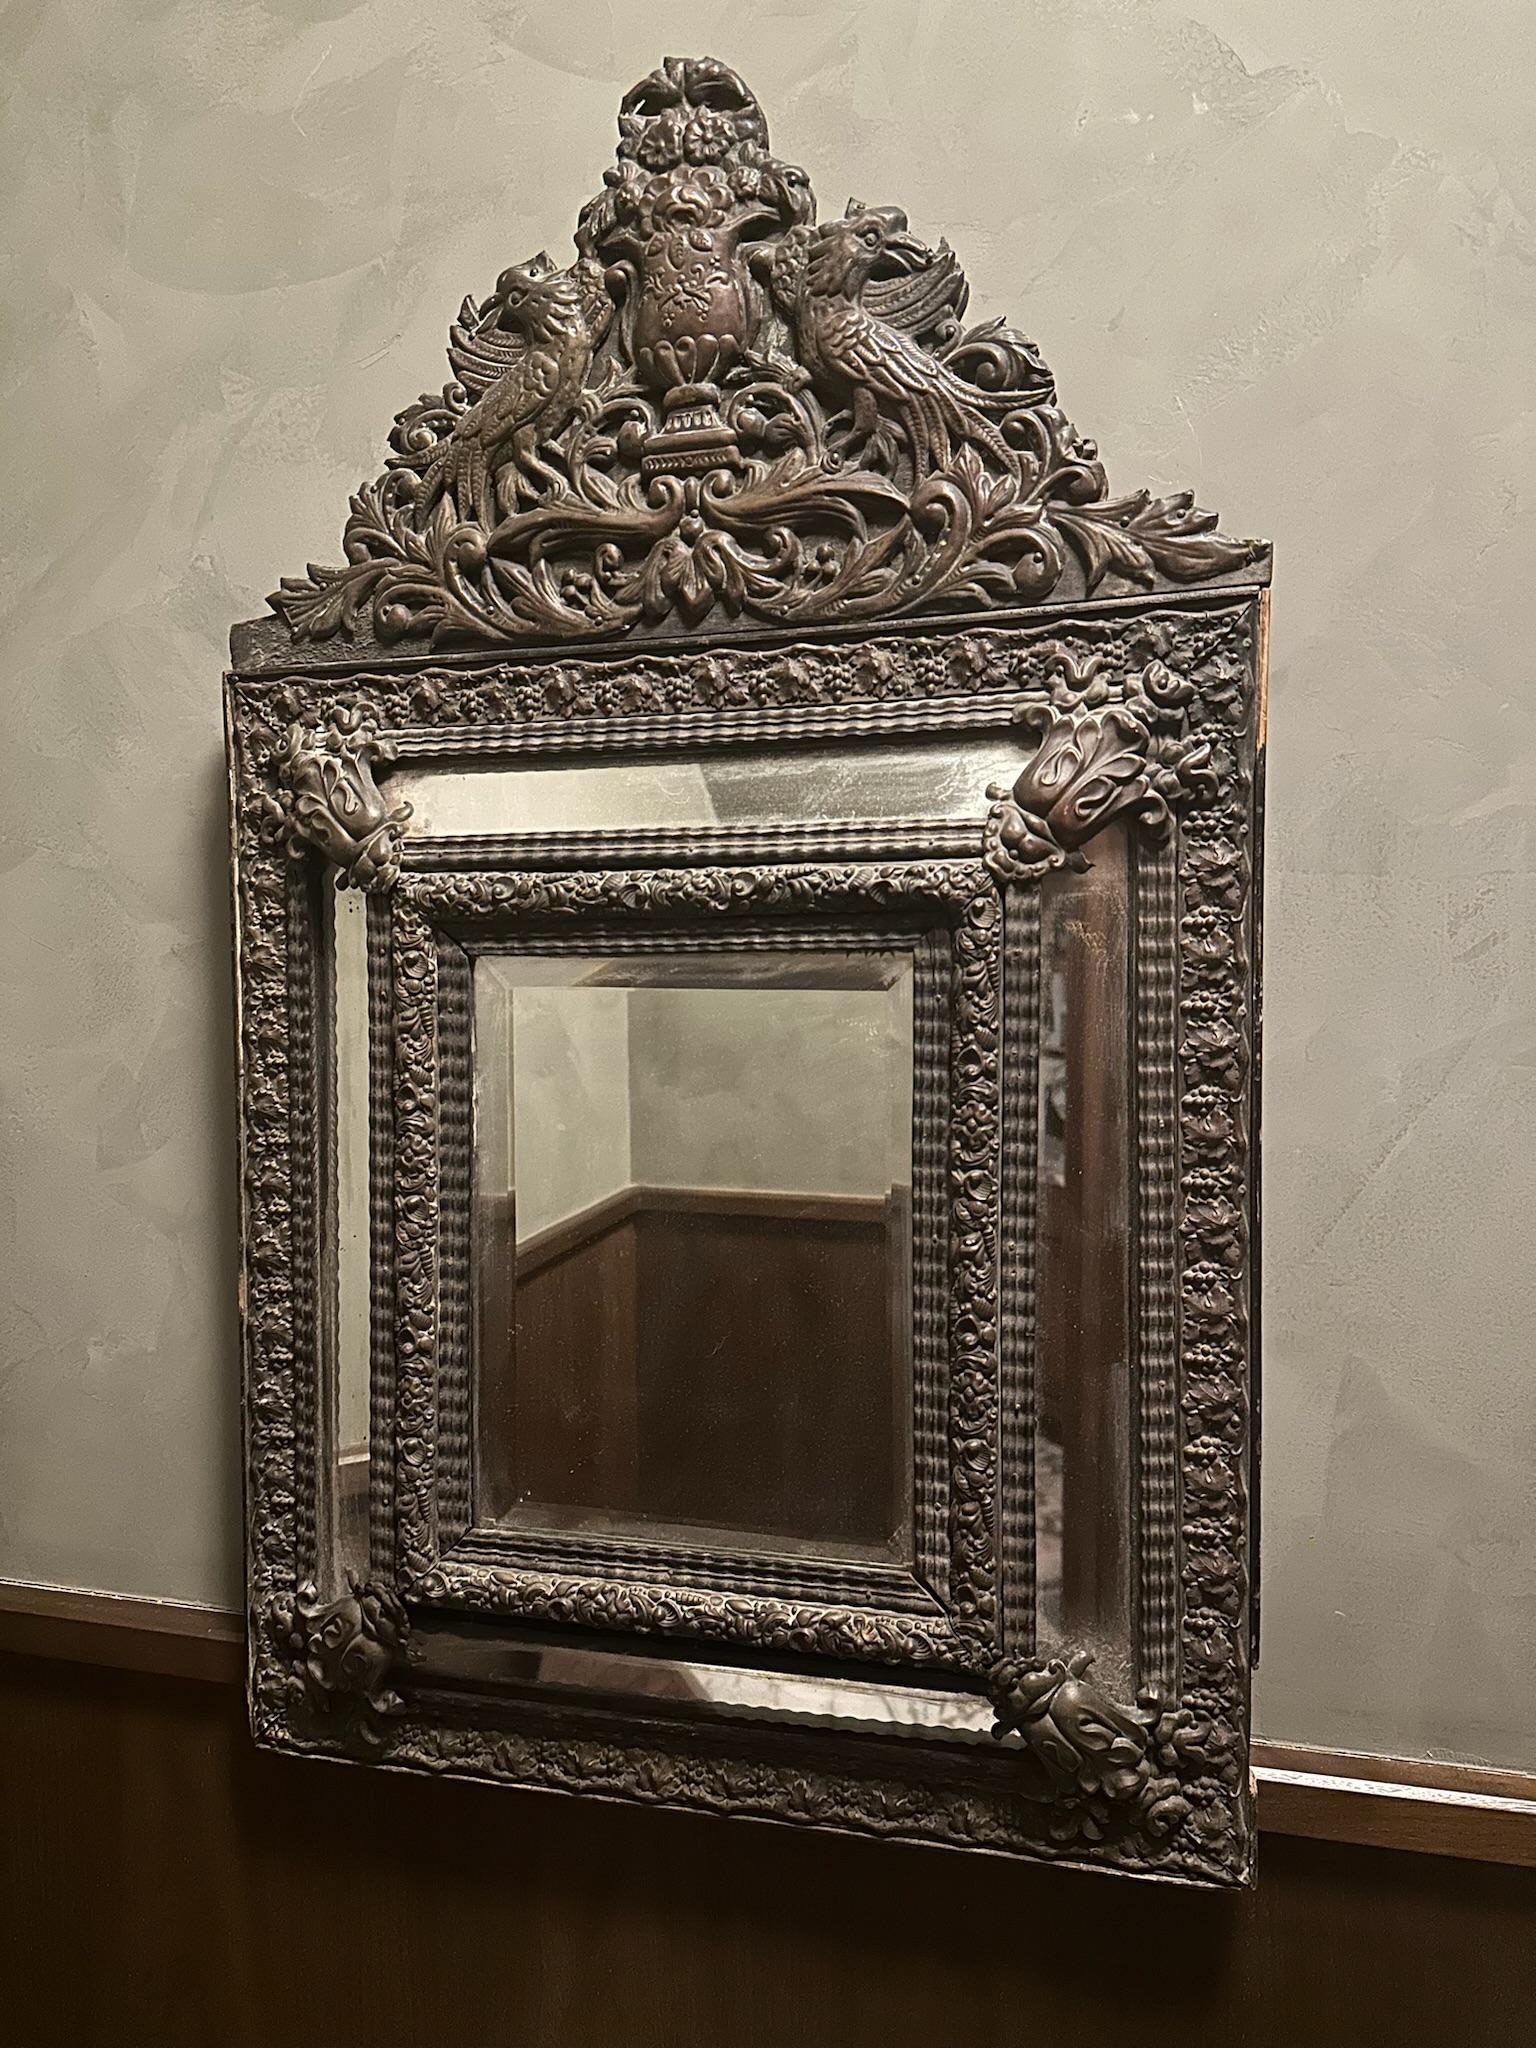 Französischer Spiegel aus dem späten 19. Jahrhundert. Der Rahmen des Spiegels ist mit in Kupferblech gepressten Blumen und Muscheln verziert. Die Rückseite des Spiegels ist mit Holz unterlegt. Mit einem Hauptspiegel, der oben, unten und an den